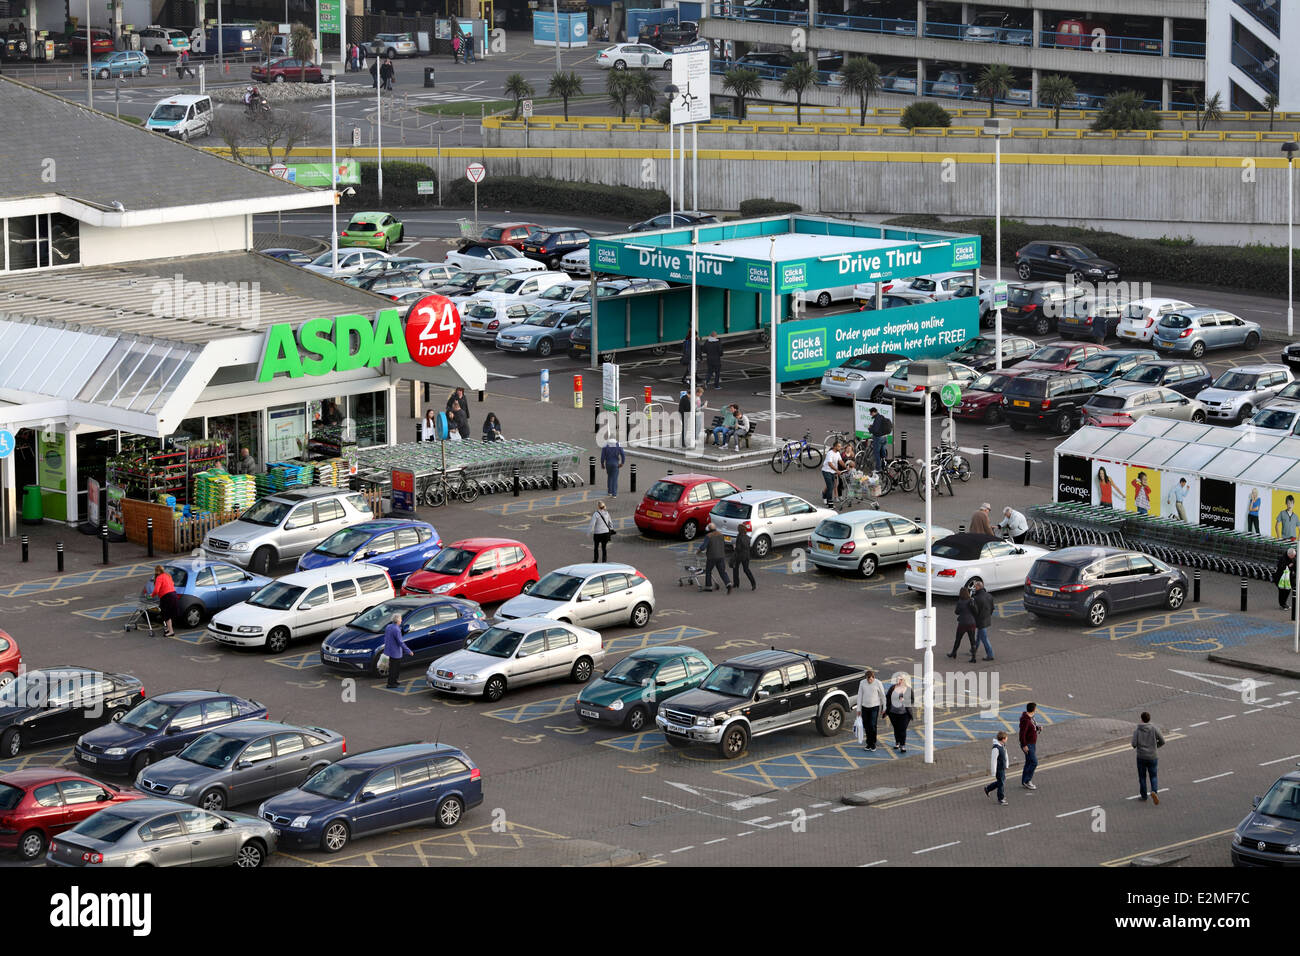 L'entrée de supermarché Asda, Brighton Marina. Cliquez sur "drive-in" et de percevoir, à droite. Banque D'Images